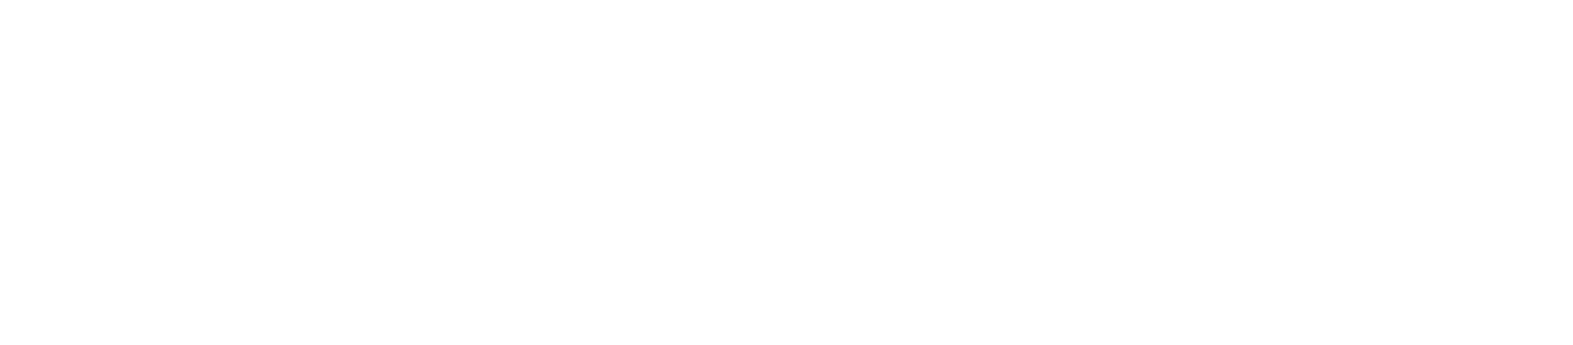 Titan Medical logo for dark backgrounds (transparent PNG)